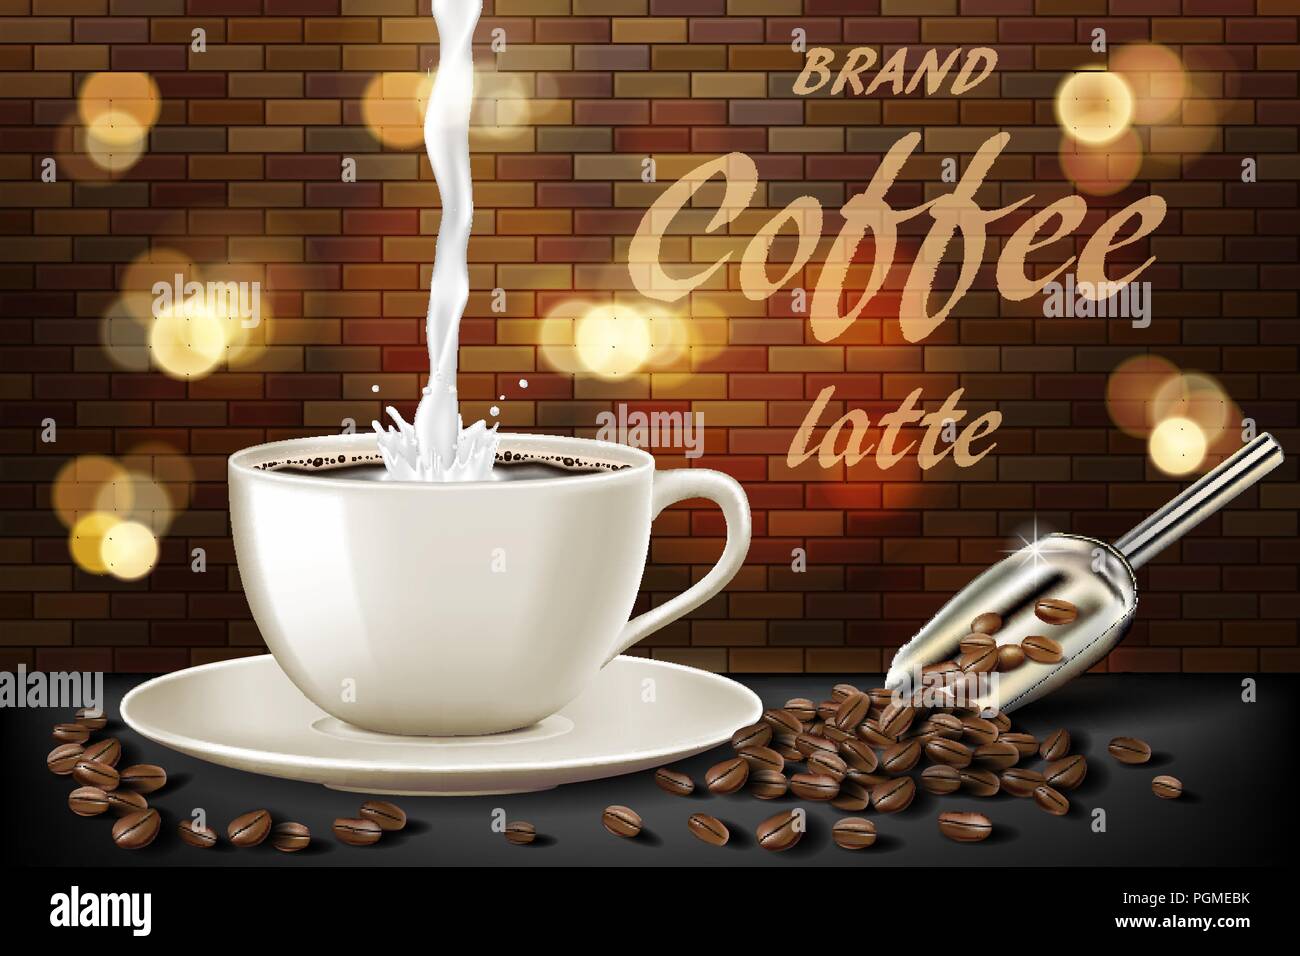 Tasse de café latte au lait splash et les haricots annonces. 3d illustration de hot coffee mug. Produit avec design rétro arrière-plan flou et brique. Vector Illustration de Vecteur